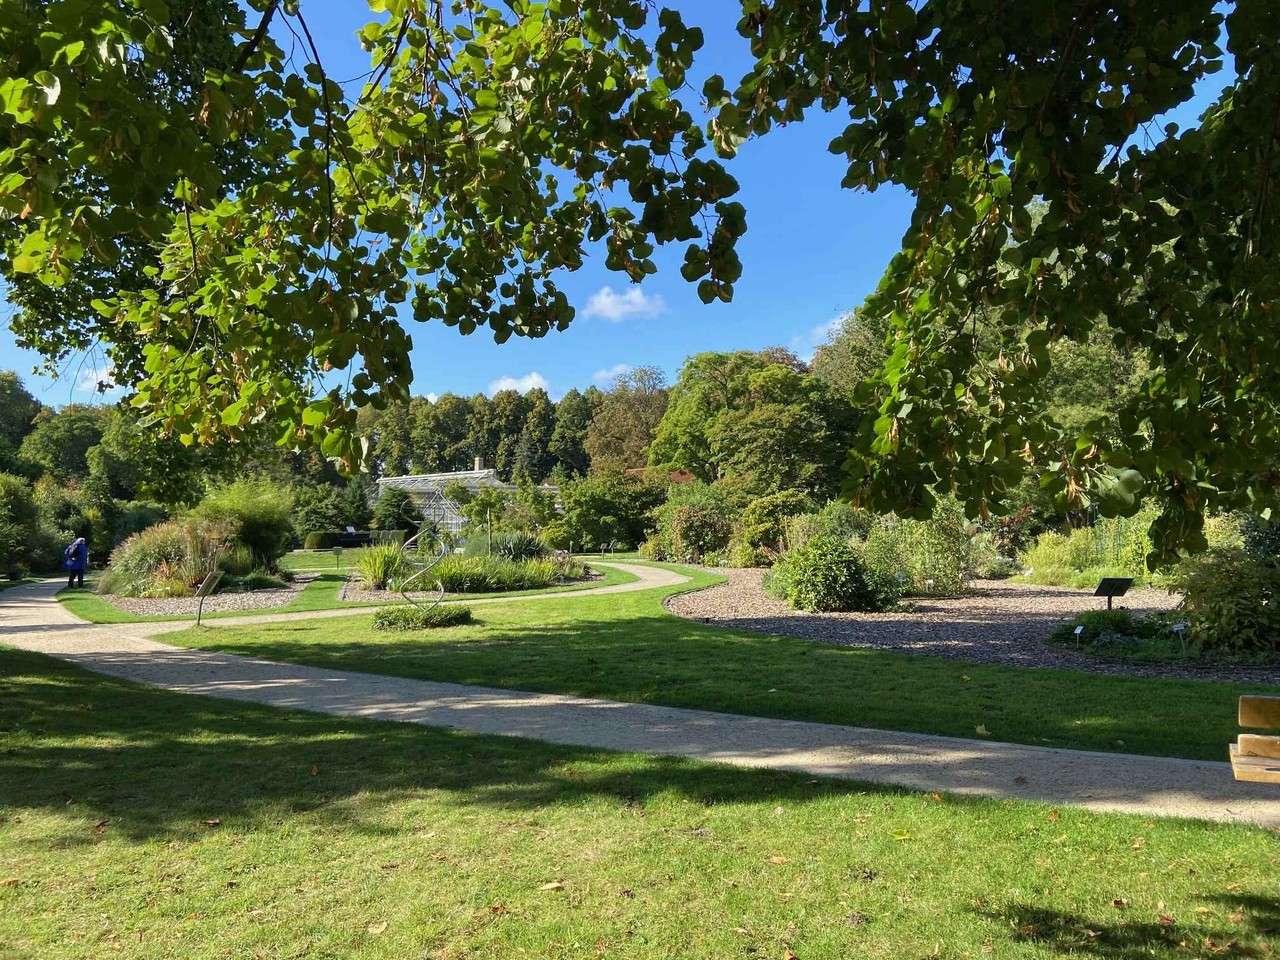 Foto des Panoramas des Botanischen Gartens mit Wiesenfläche durchschnitten von Gehwegen und Kiesbeeten. In der Ferne sind hohe Bäume zu erkennen.